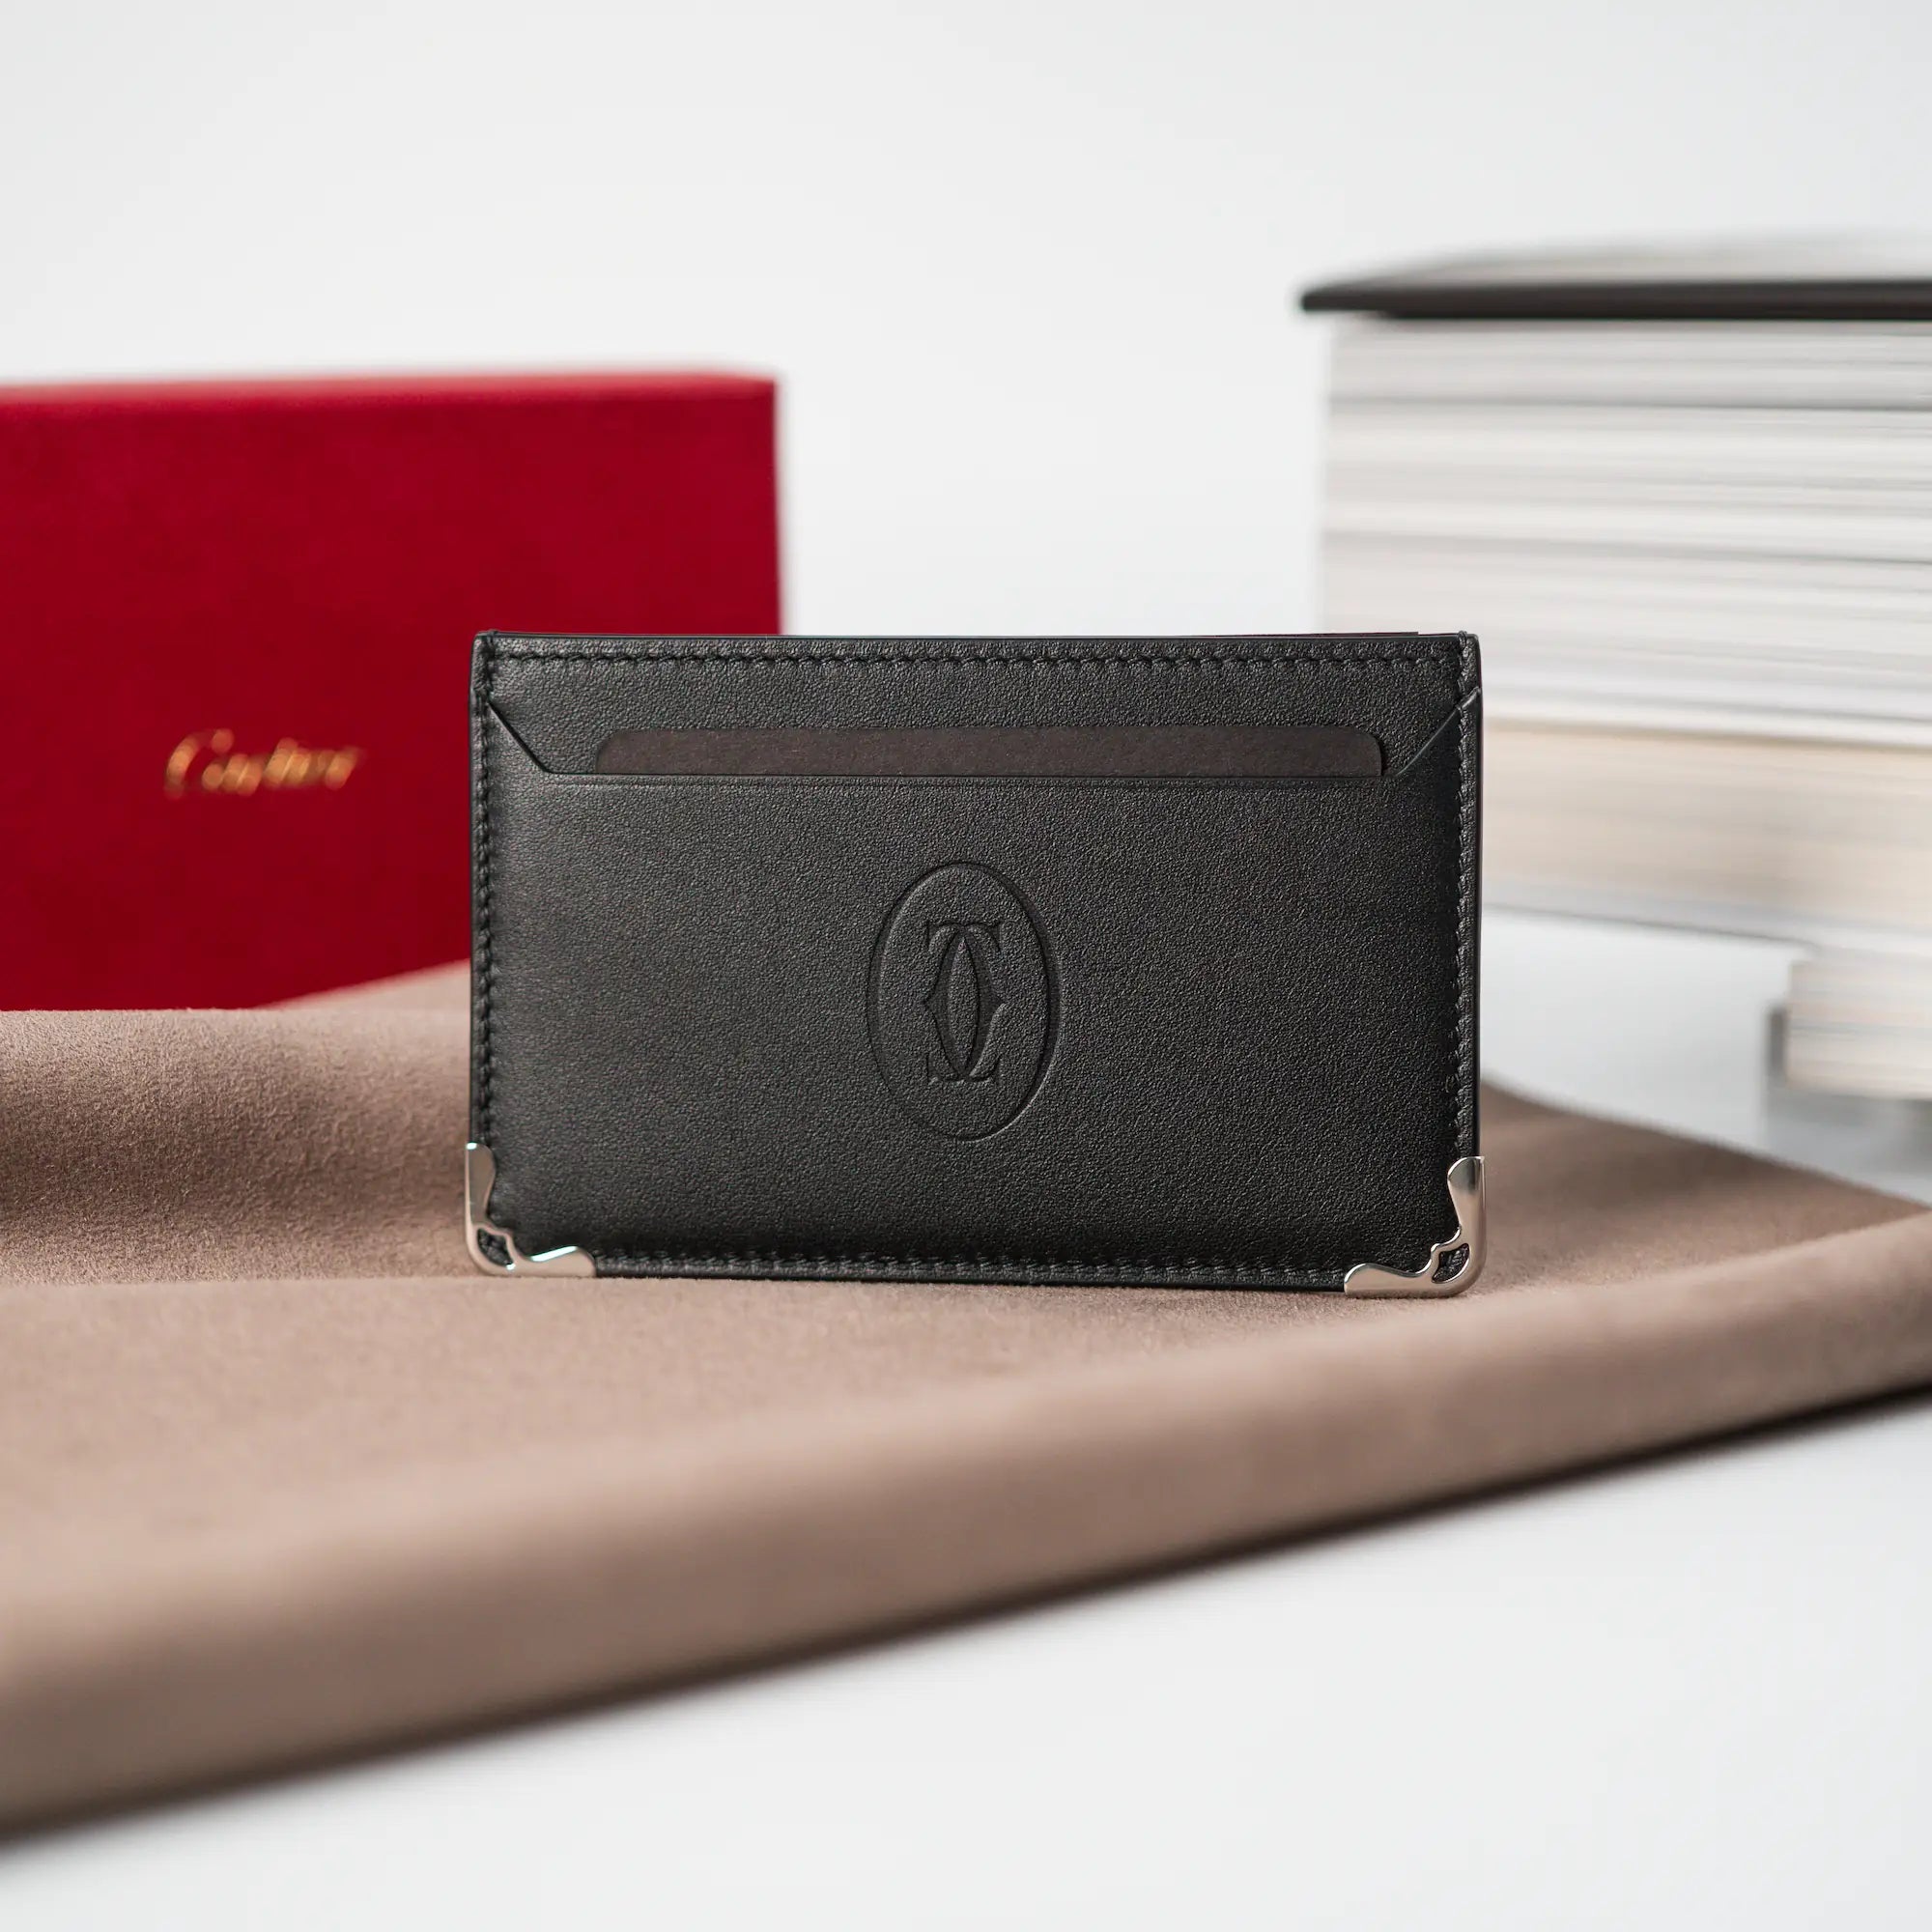 Produktfotografie des schwarzen Cardholders von Cartier aus schwarzem Leder